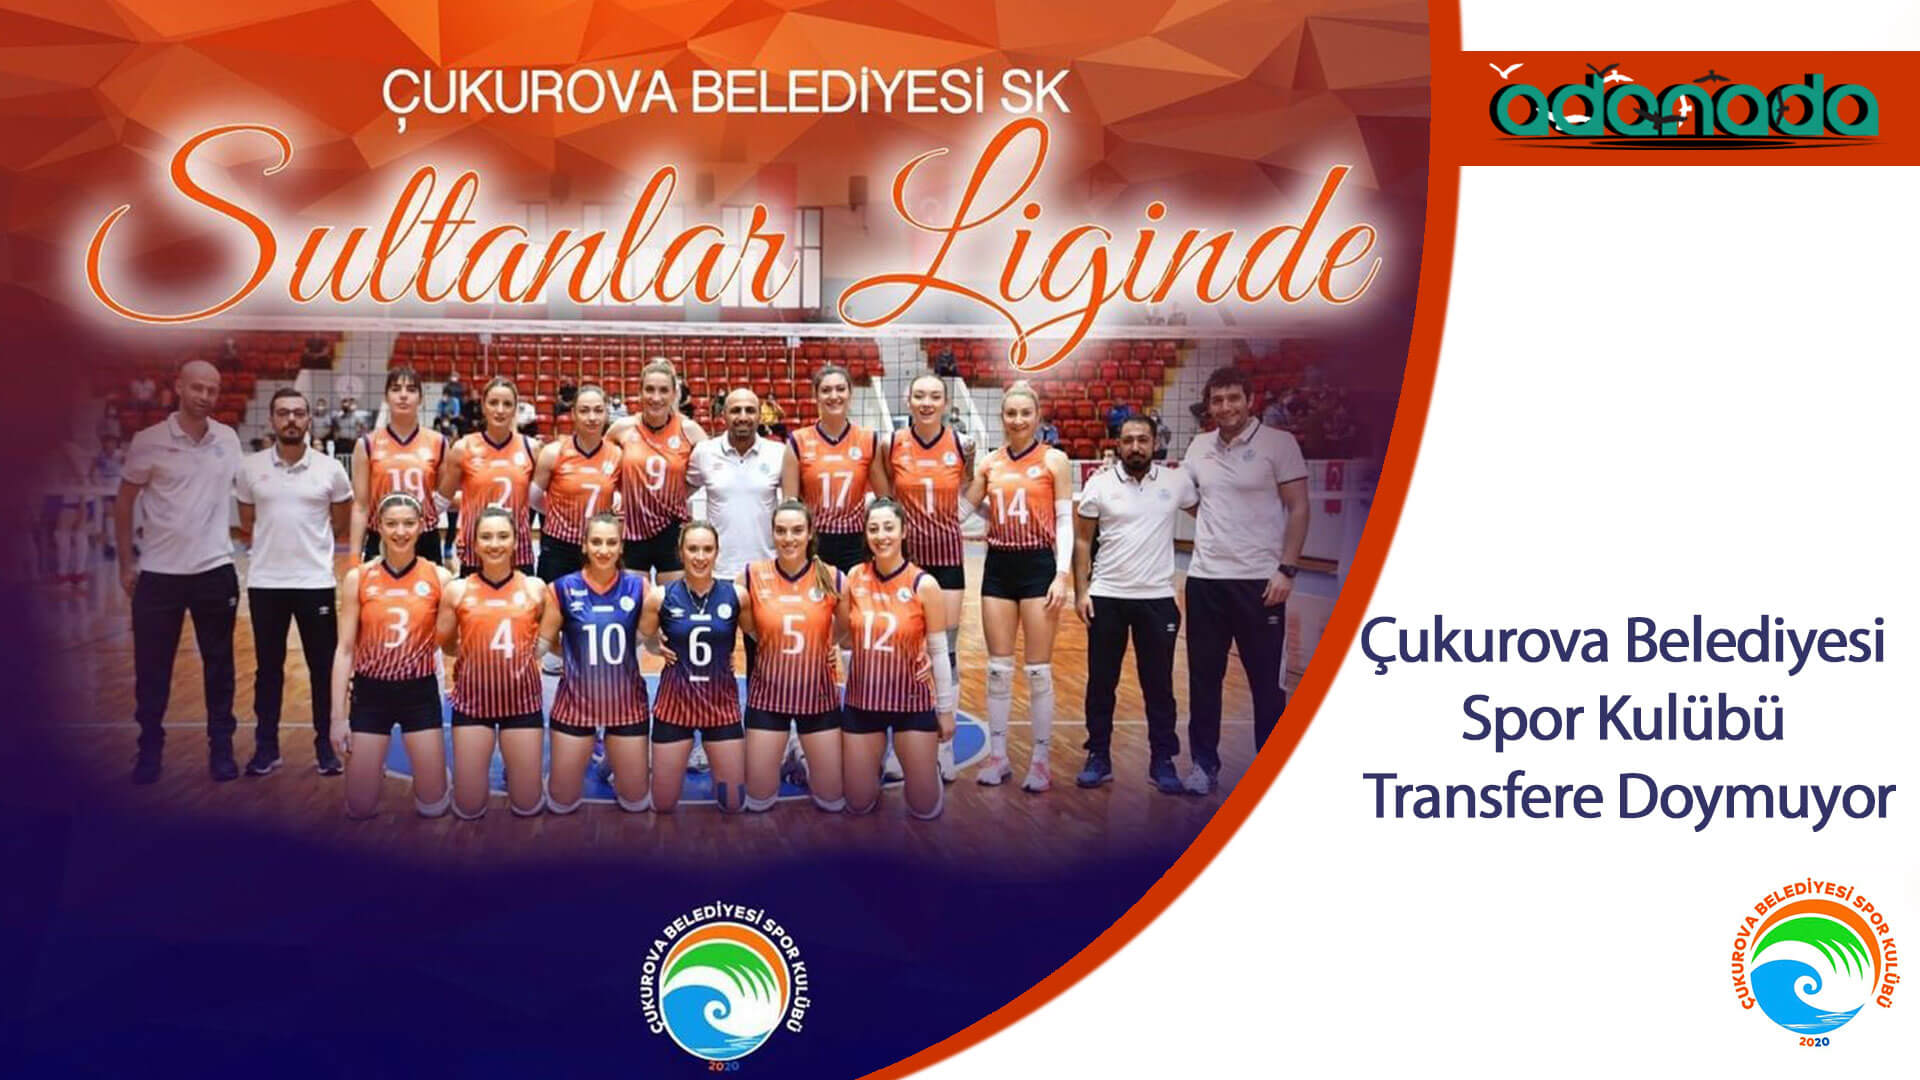 Çukurova Belediyesi Spor Kulübü Transfere Doymuyor